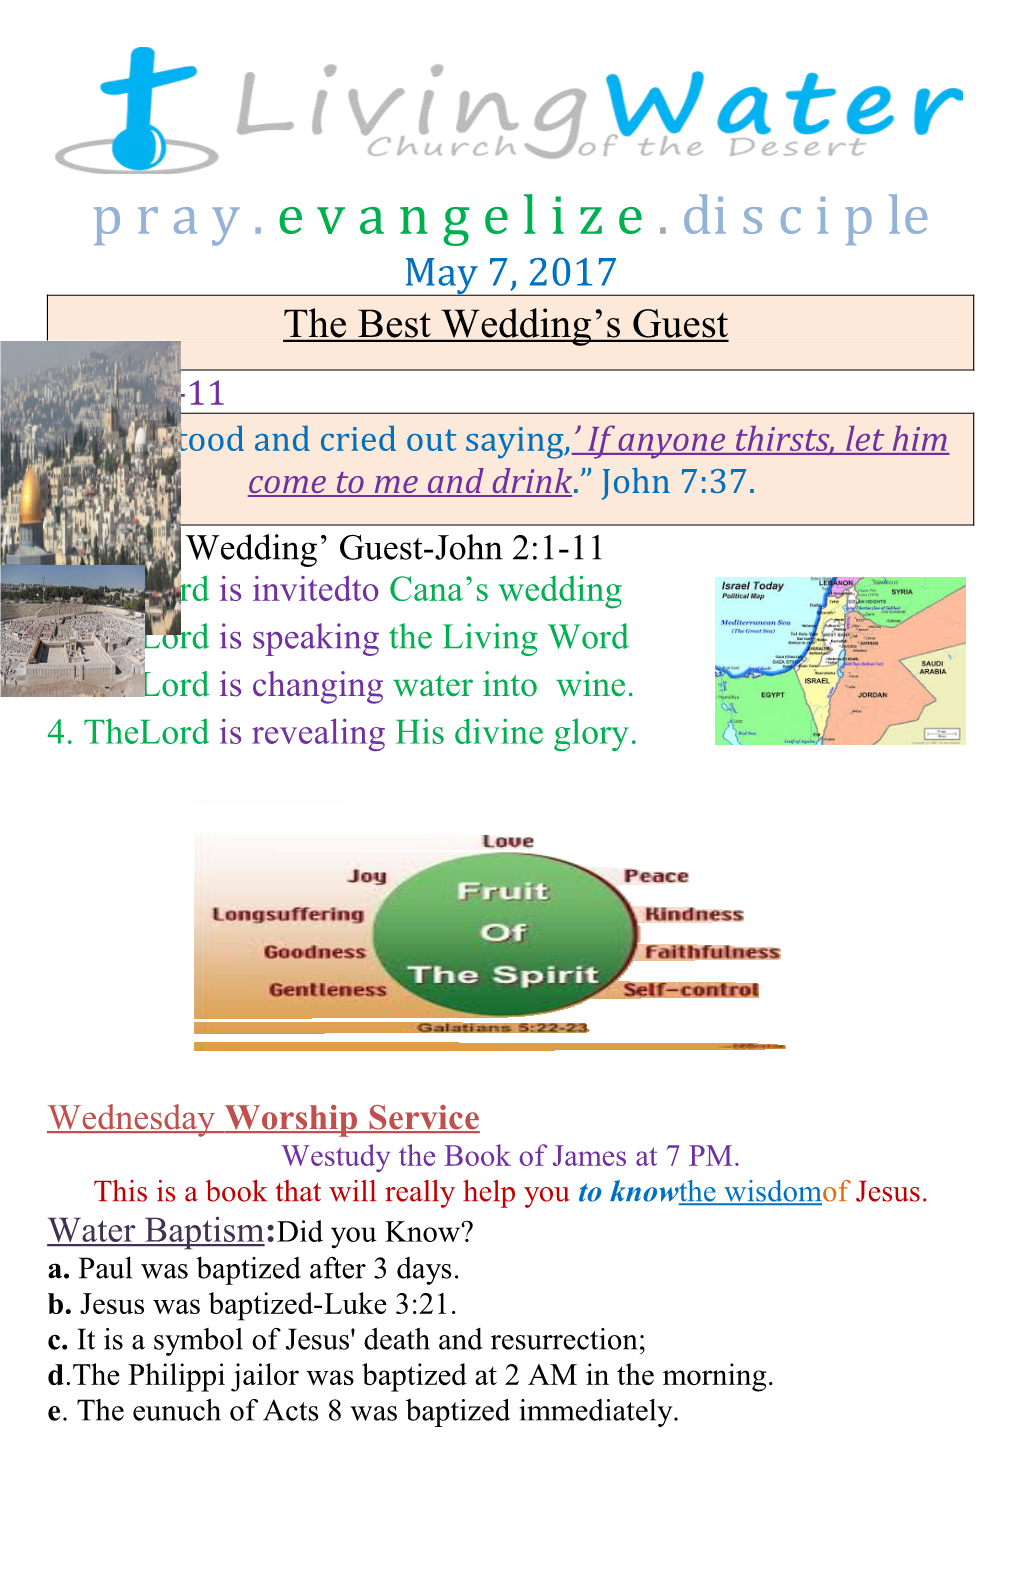 The Best Wedding Guest-John 2:1-11